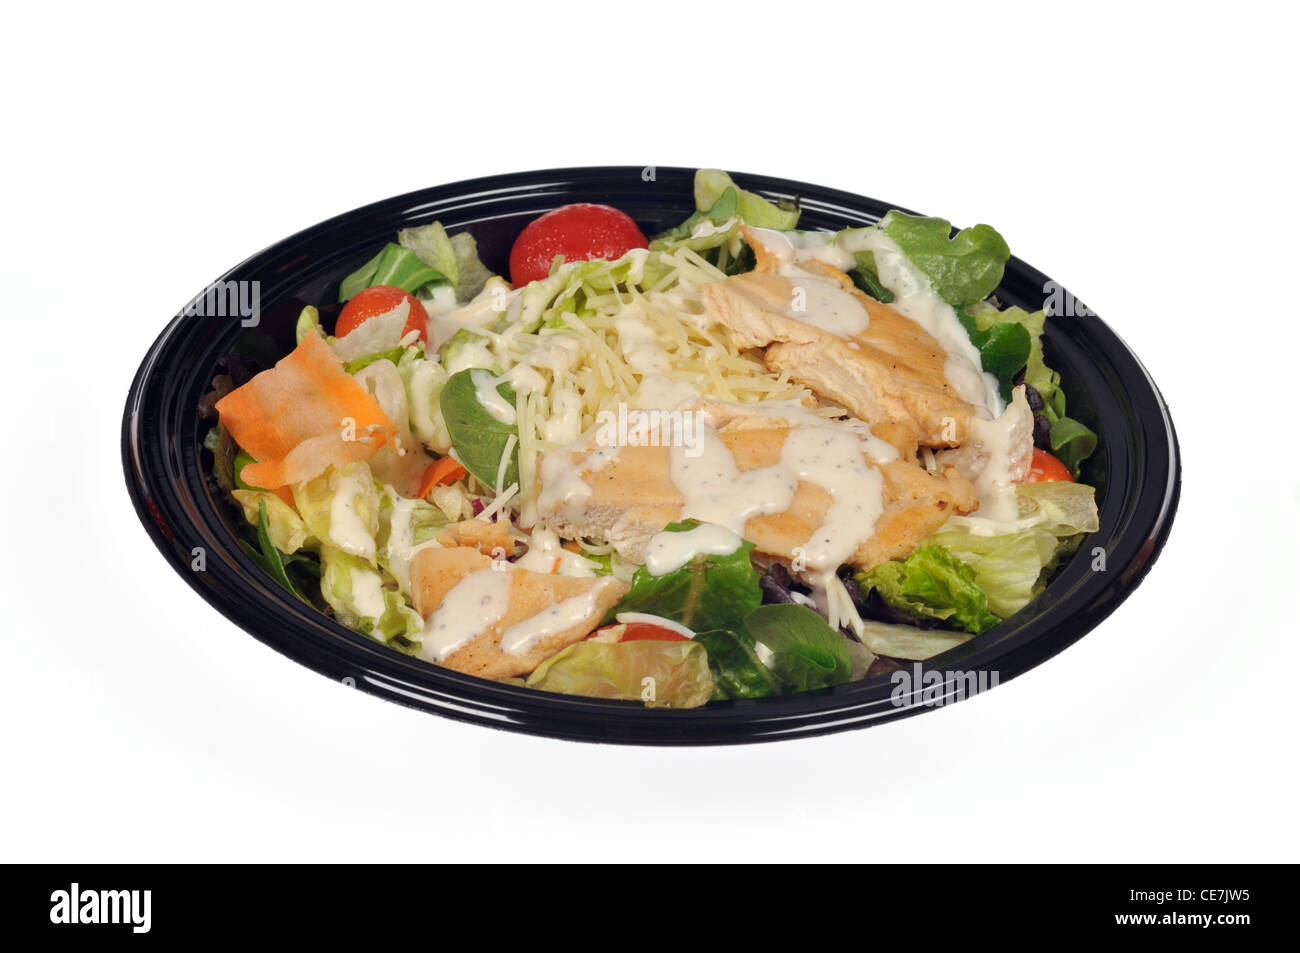 McDonalds salade césar au poulet grillé avec sauce sur fond blanc. Banque D'Images